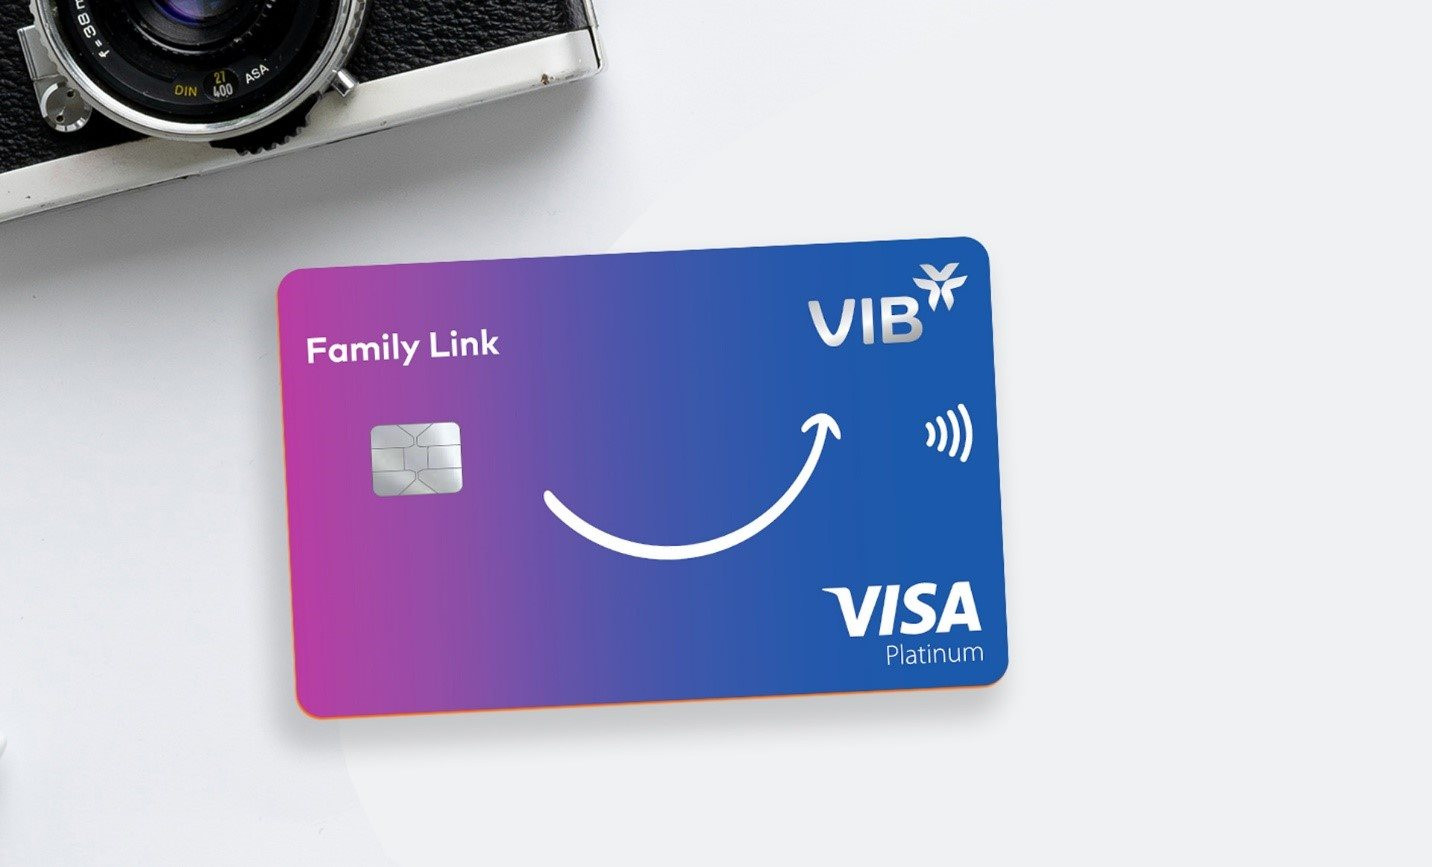 Biến mùa hè thành kỳ nghỉ đáng nhớ của cả nhà với thẻ tín dụng VIB Family Link - Ảnh 2.